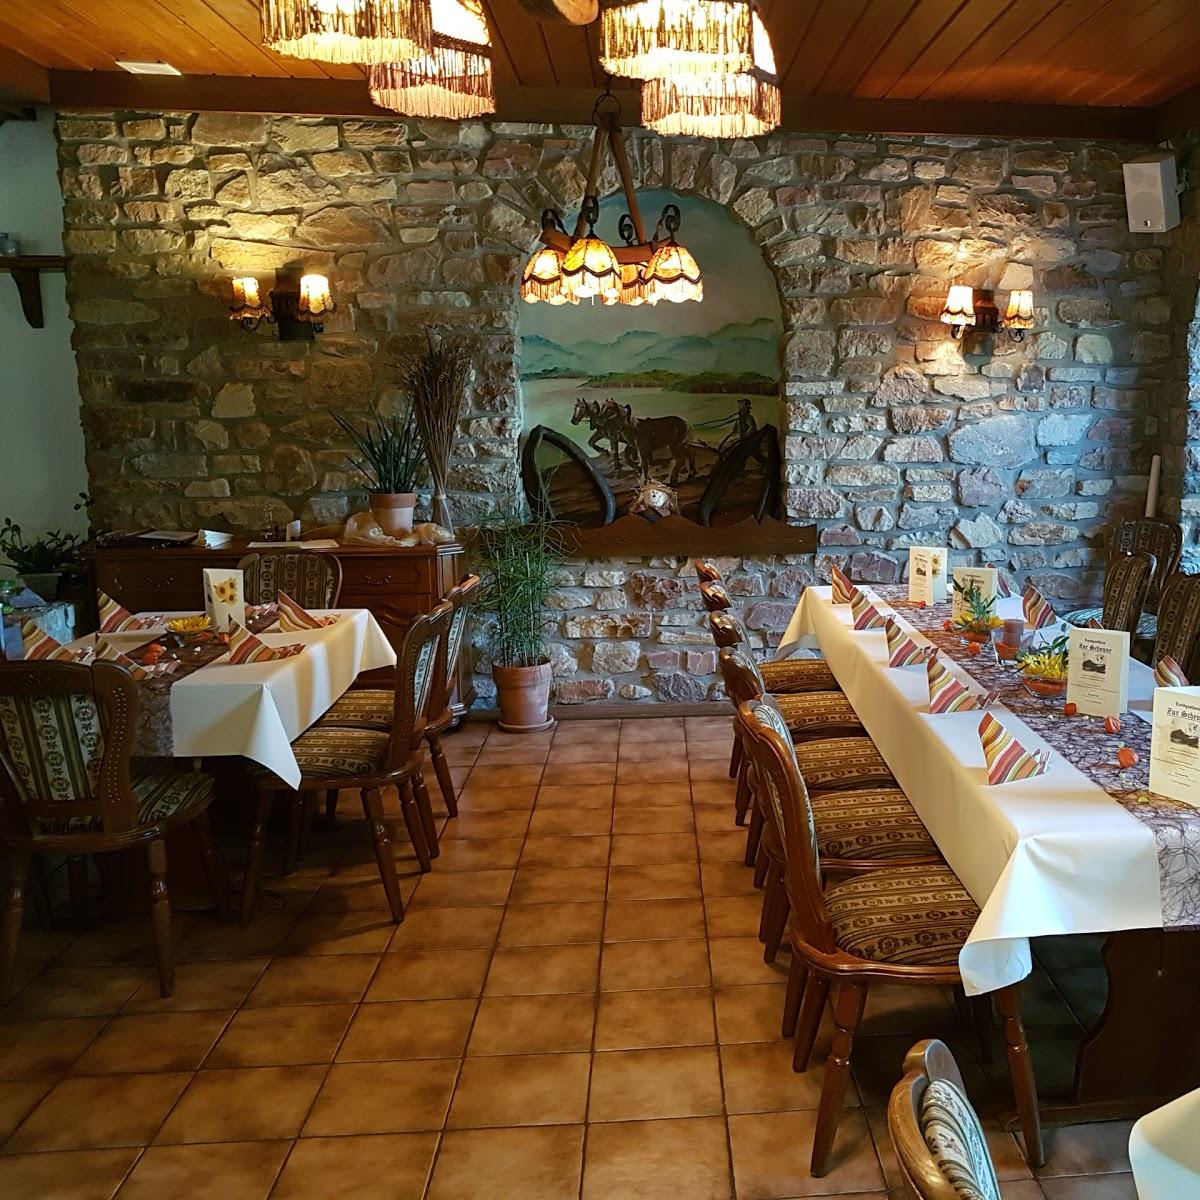 Restaurant "Landgasthof zur Scheune" in Baumholder